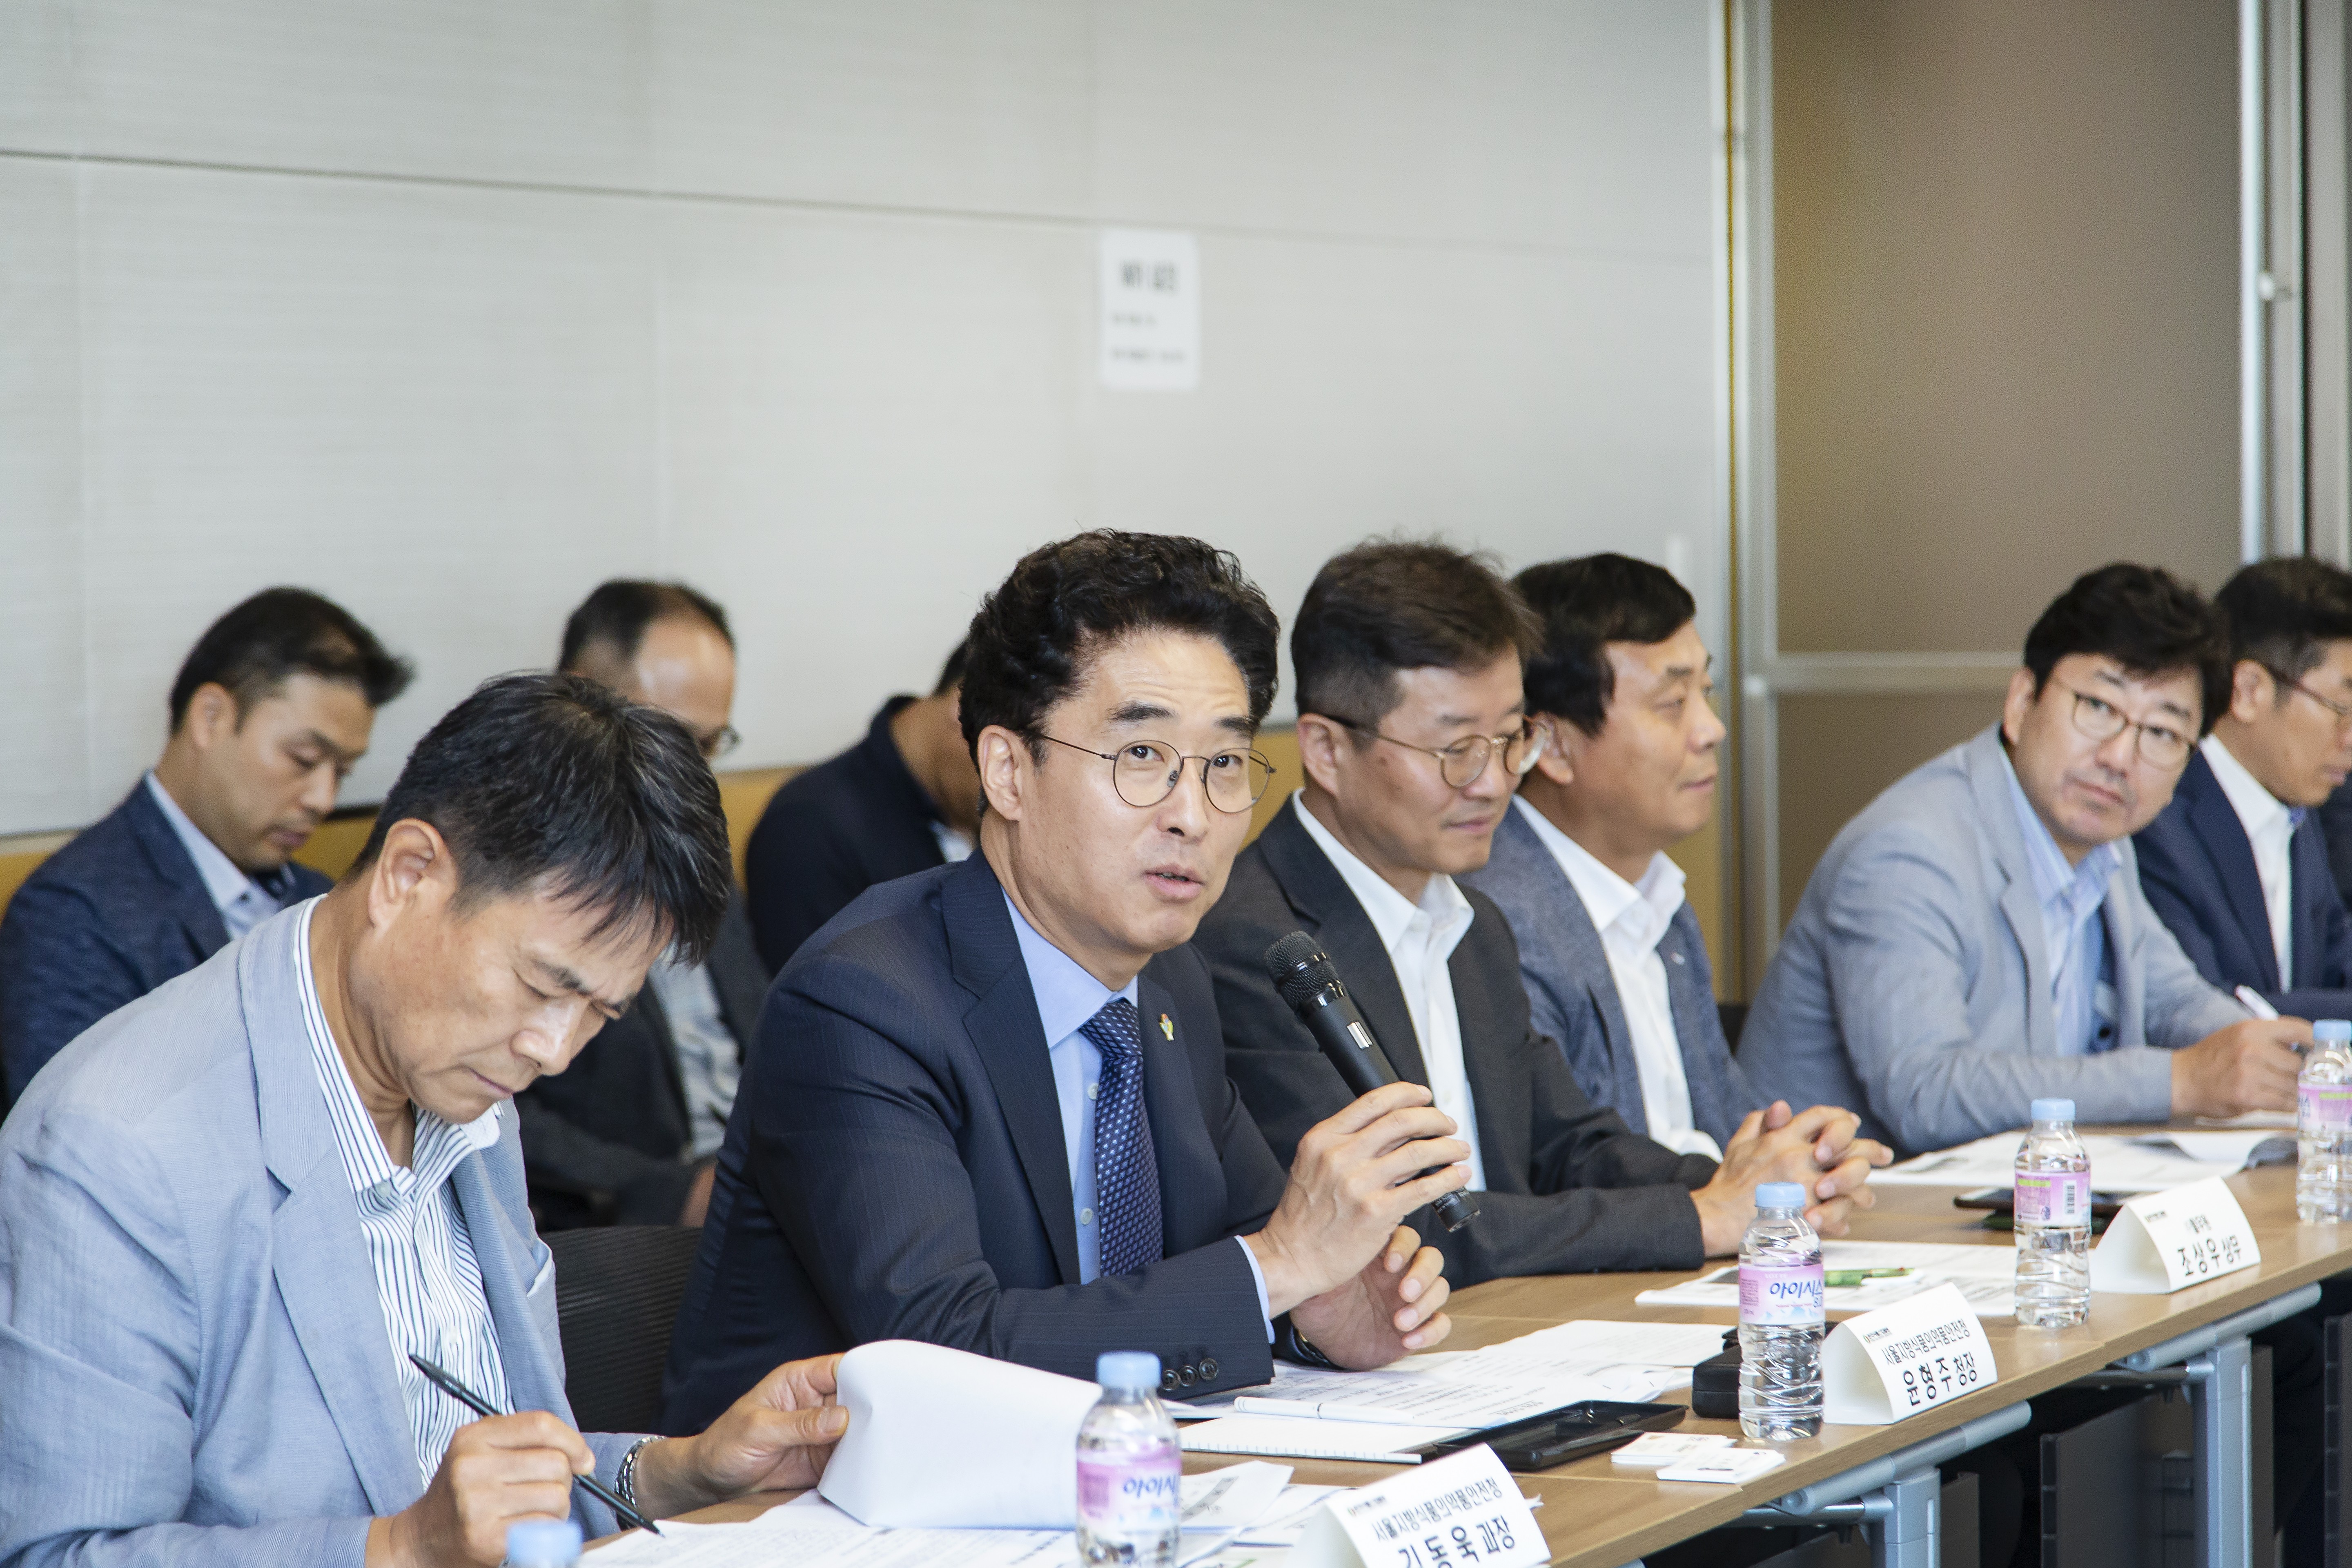 한국식품산업협회 식품안전관리 간담회